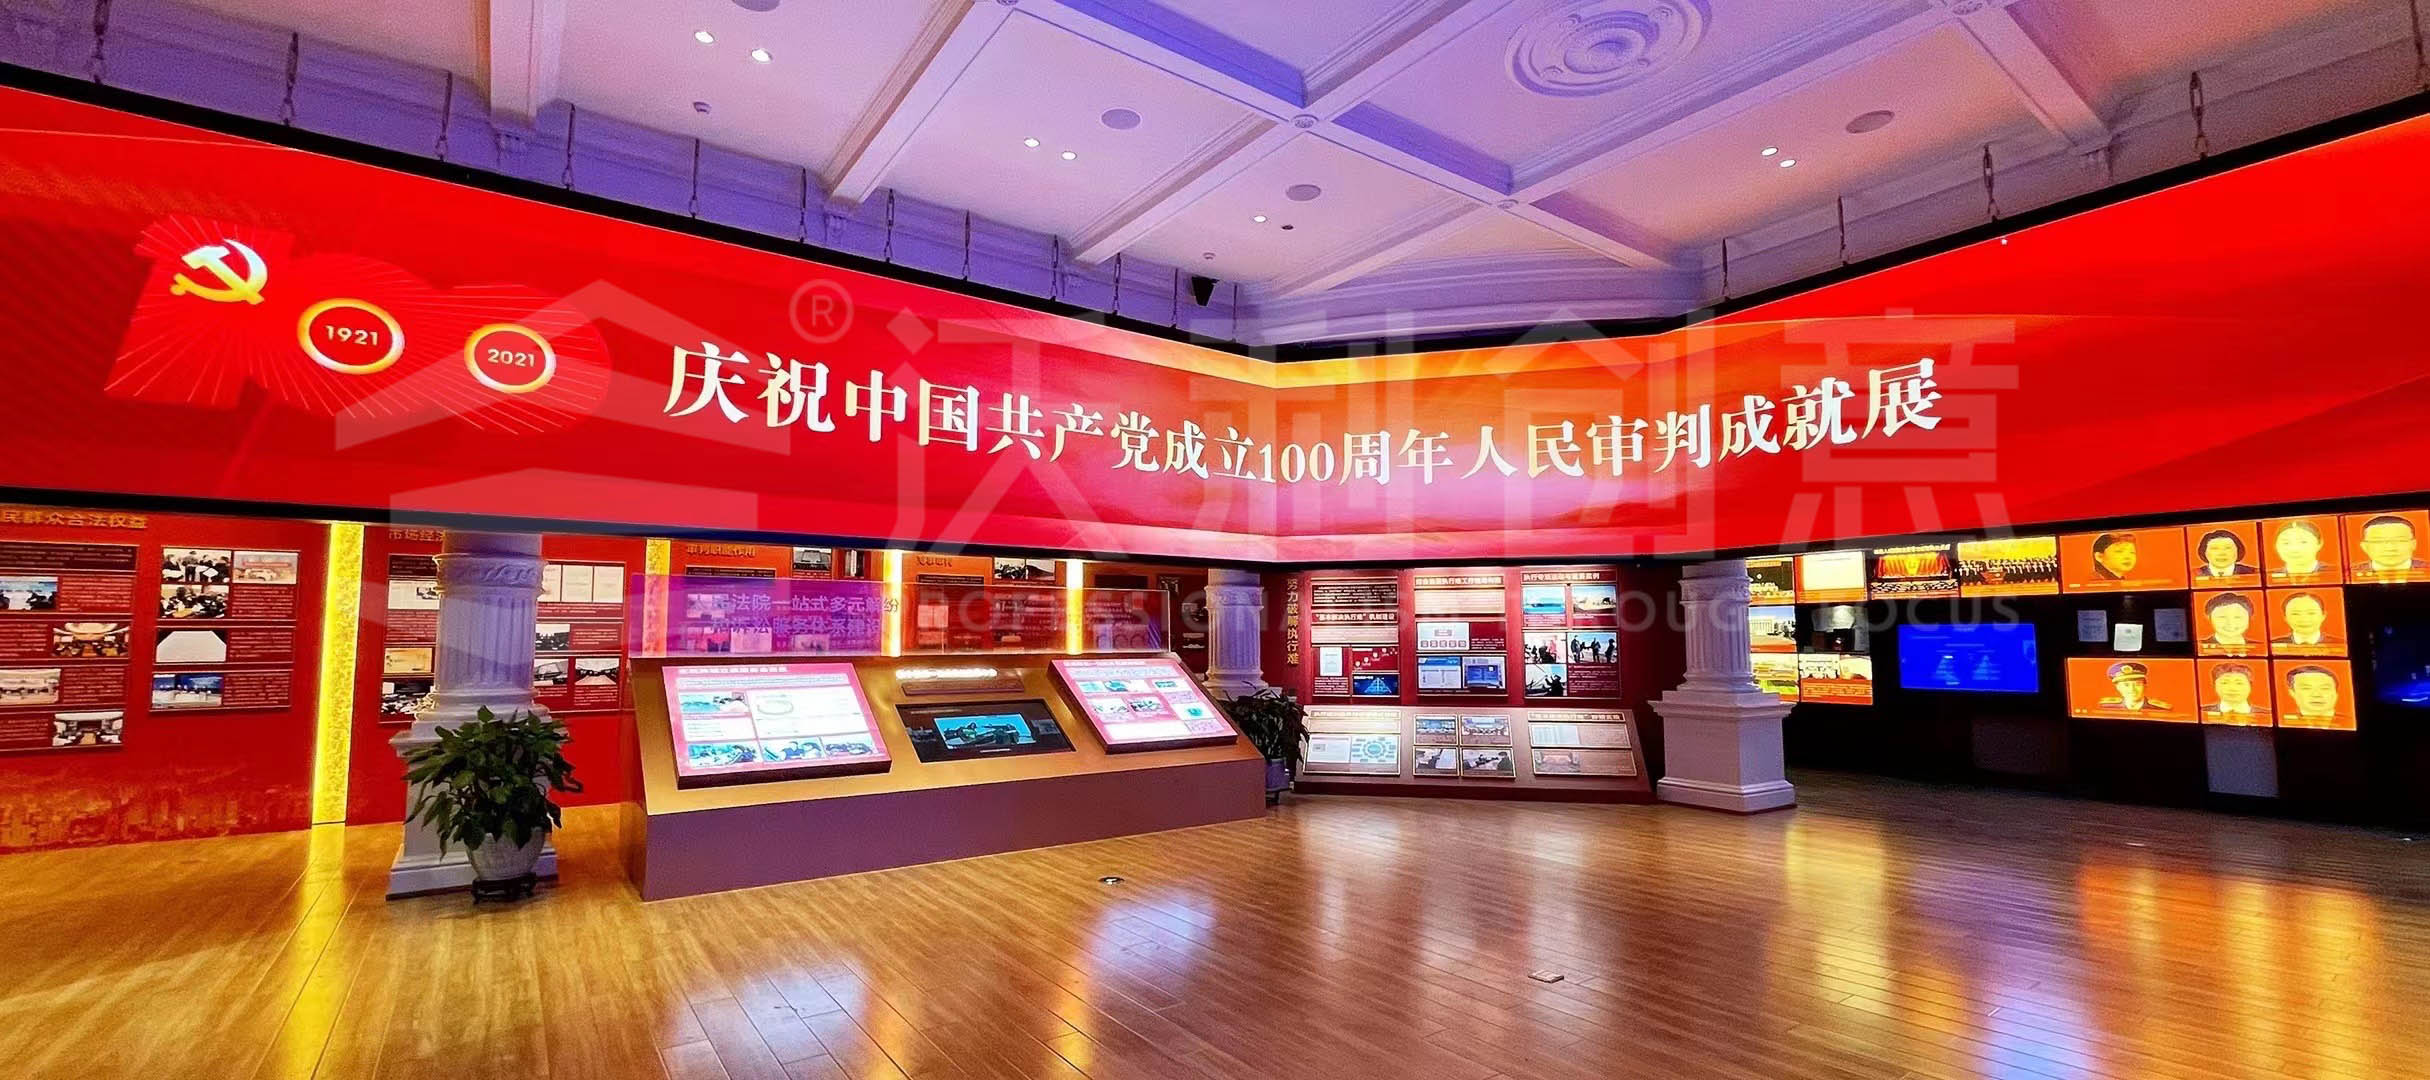 中国法院博物馆丨庆祝中国共产党成立100周年人民审判成就展